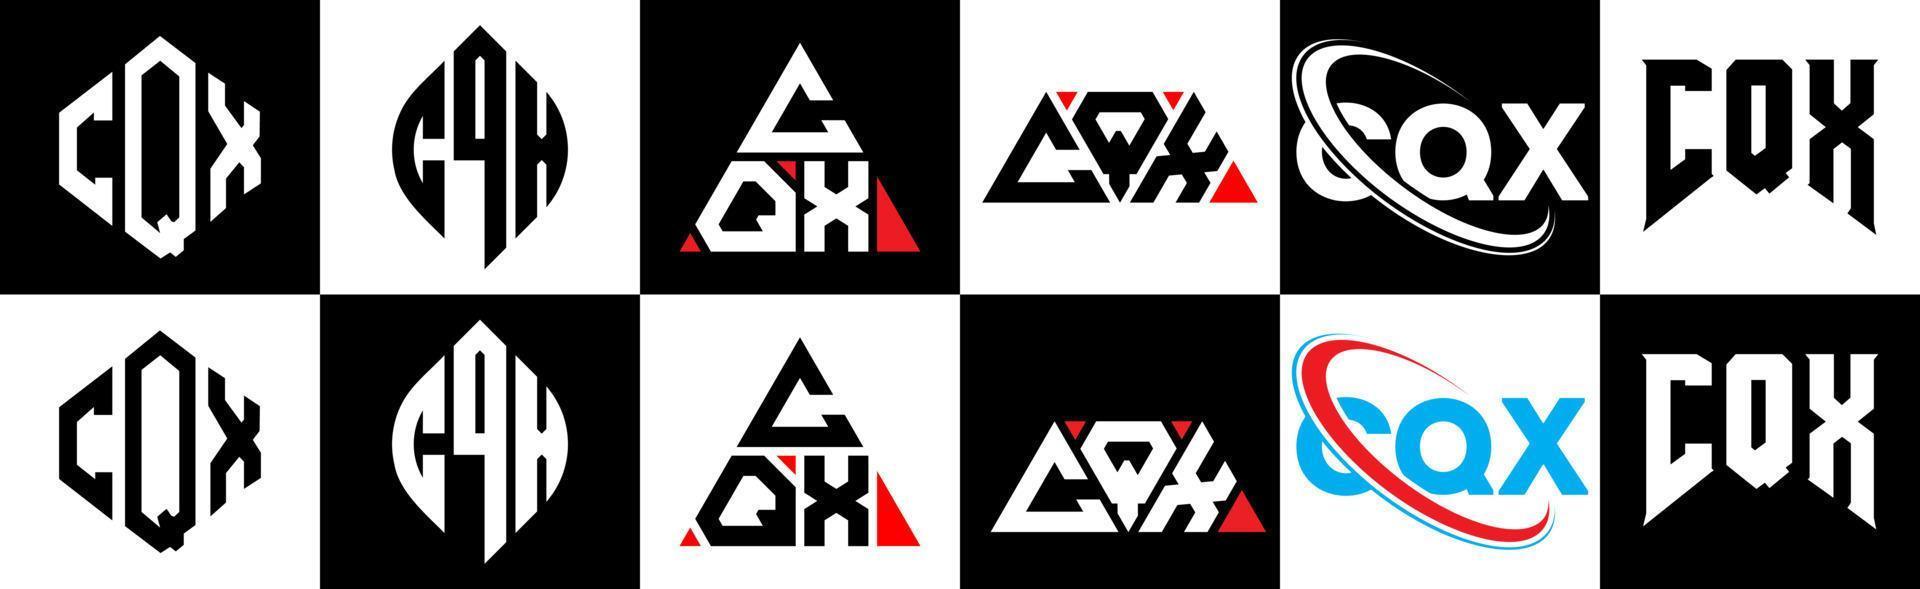 création de logo de lettre cqx en six styles. cqx polygone, cercle, triangle, hexagone, style plat et simple avec logo de lettre de variation de couleur noir et blanc dans un plan de travail. cqx logo minimaliste et classique vecteur